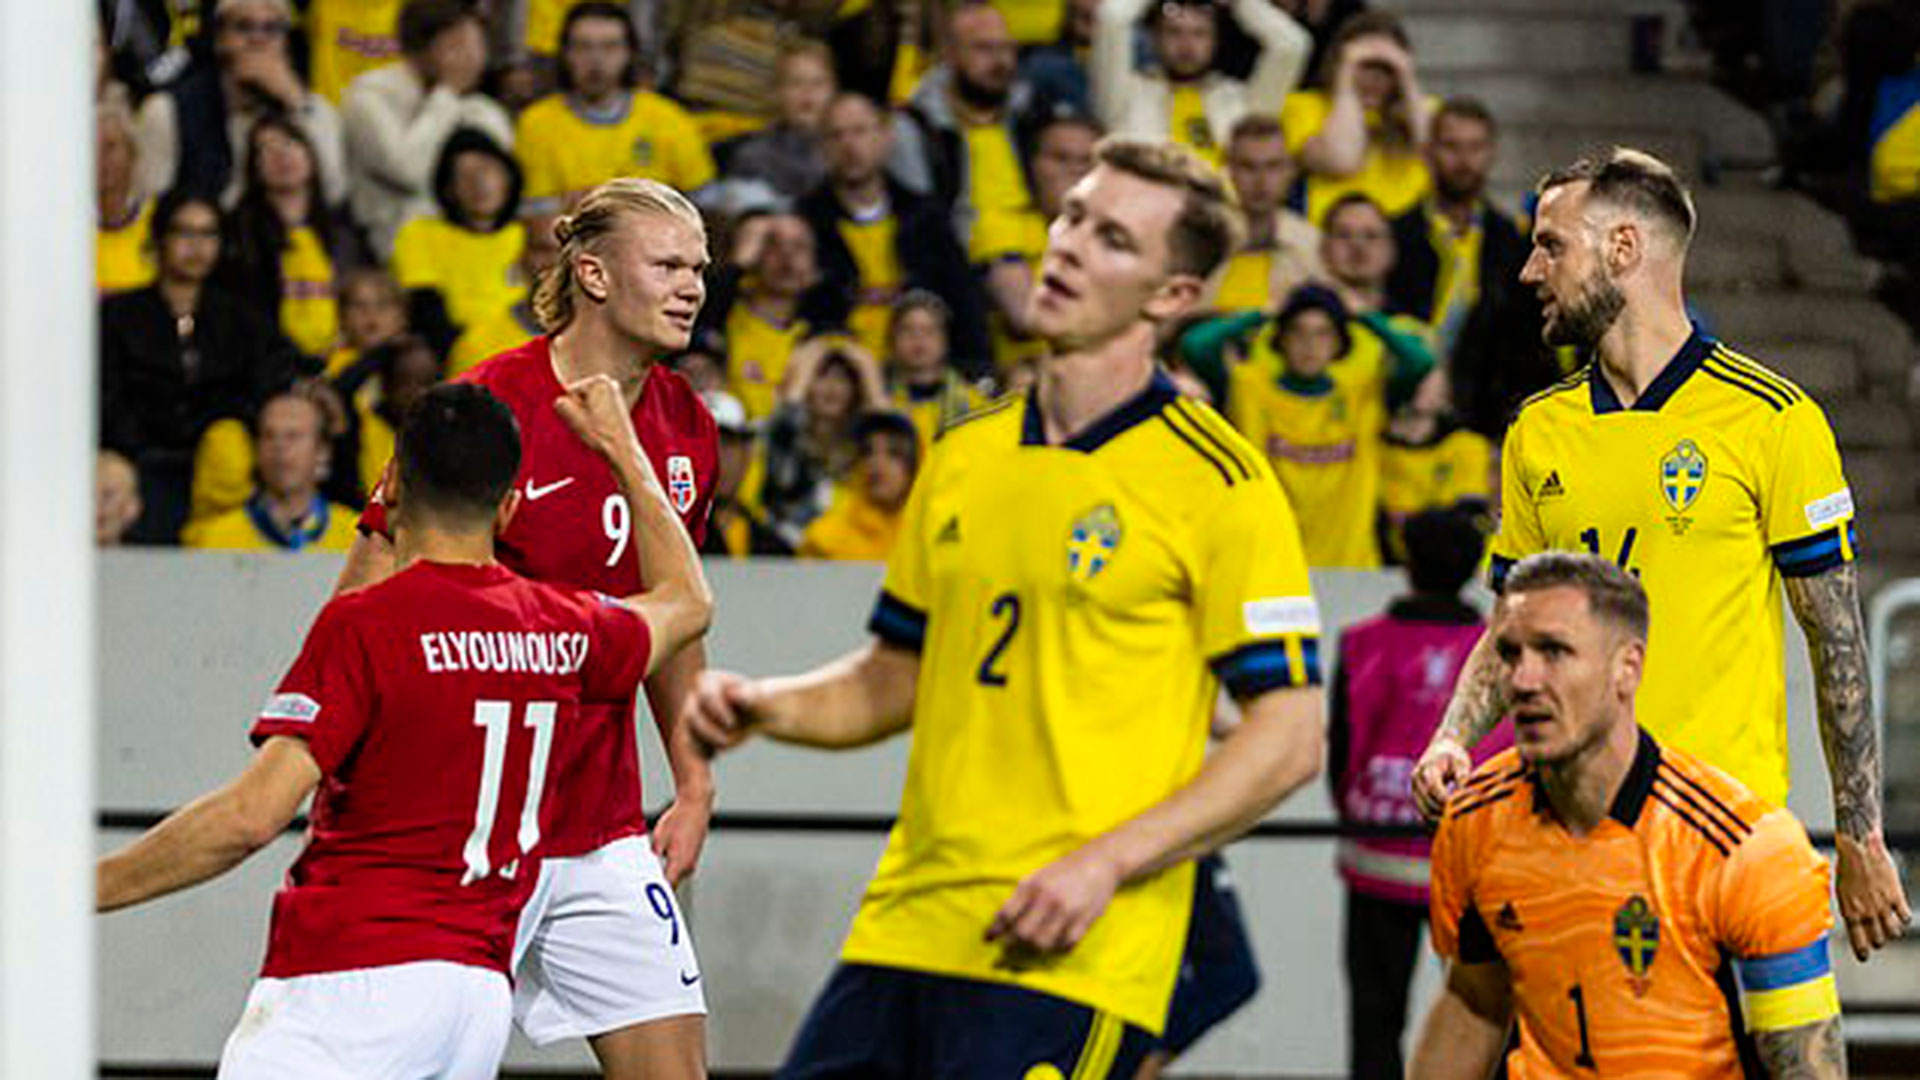 La grave denuncia de Haaland contra un jugador de Suecia: “Me llamó prostituta y amenazó con romperme las piernas”